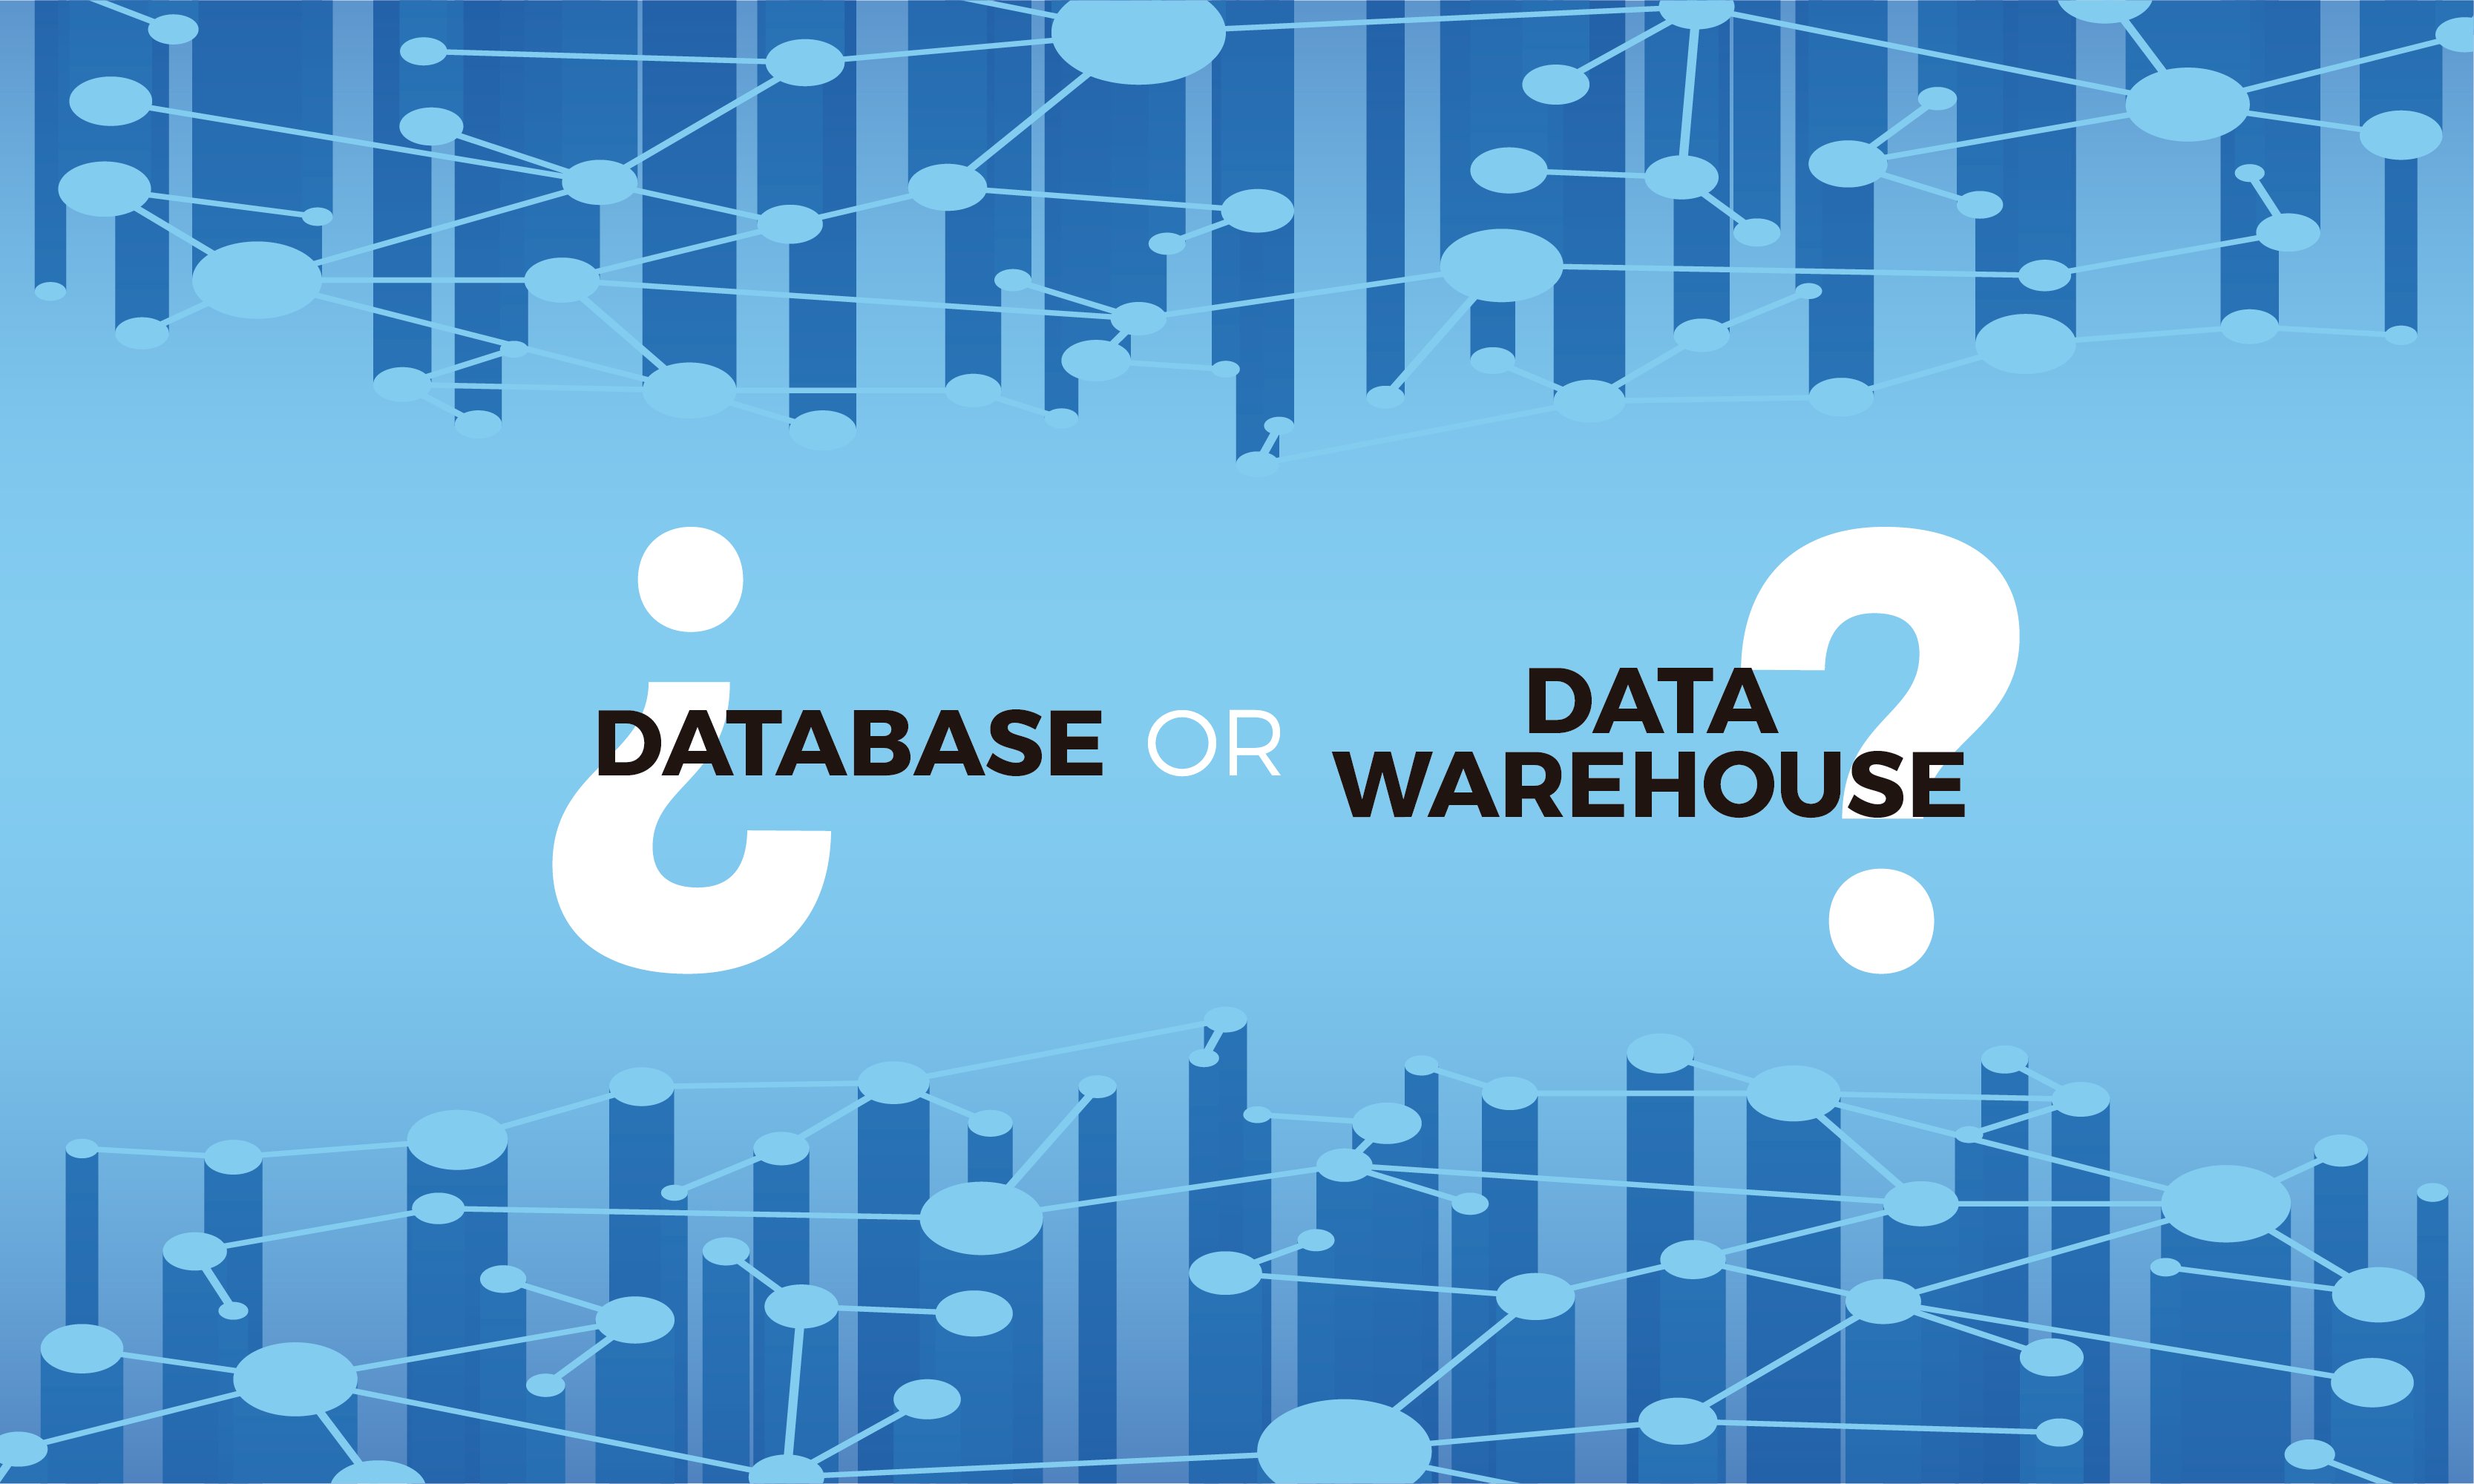 Quan triar un data warehouse en lloc d’una base de dades?